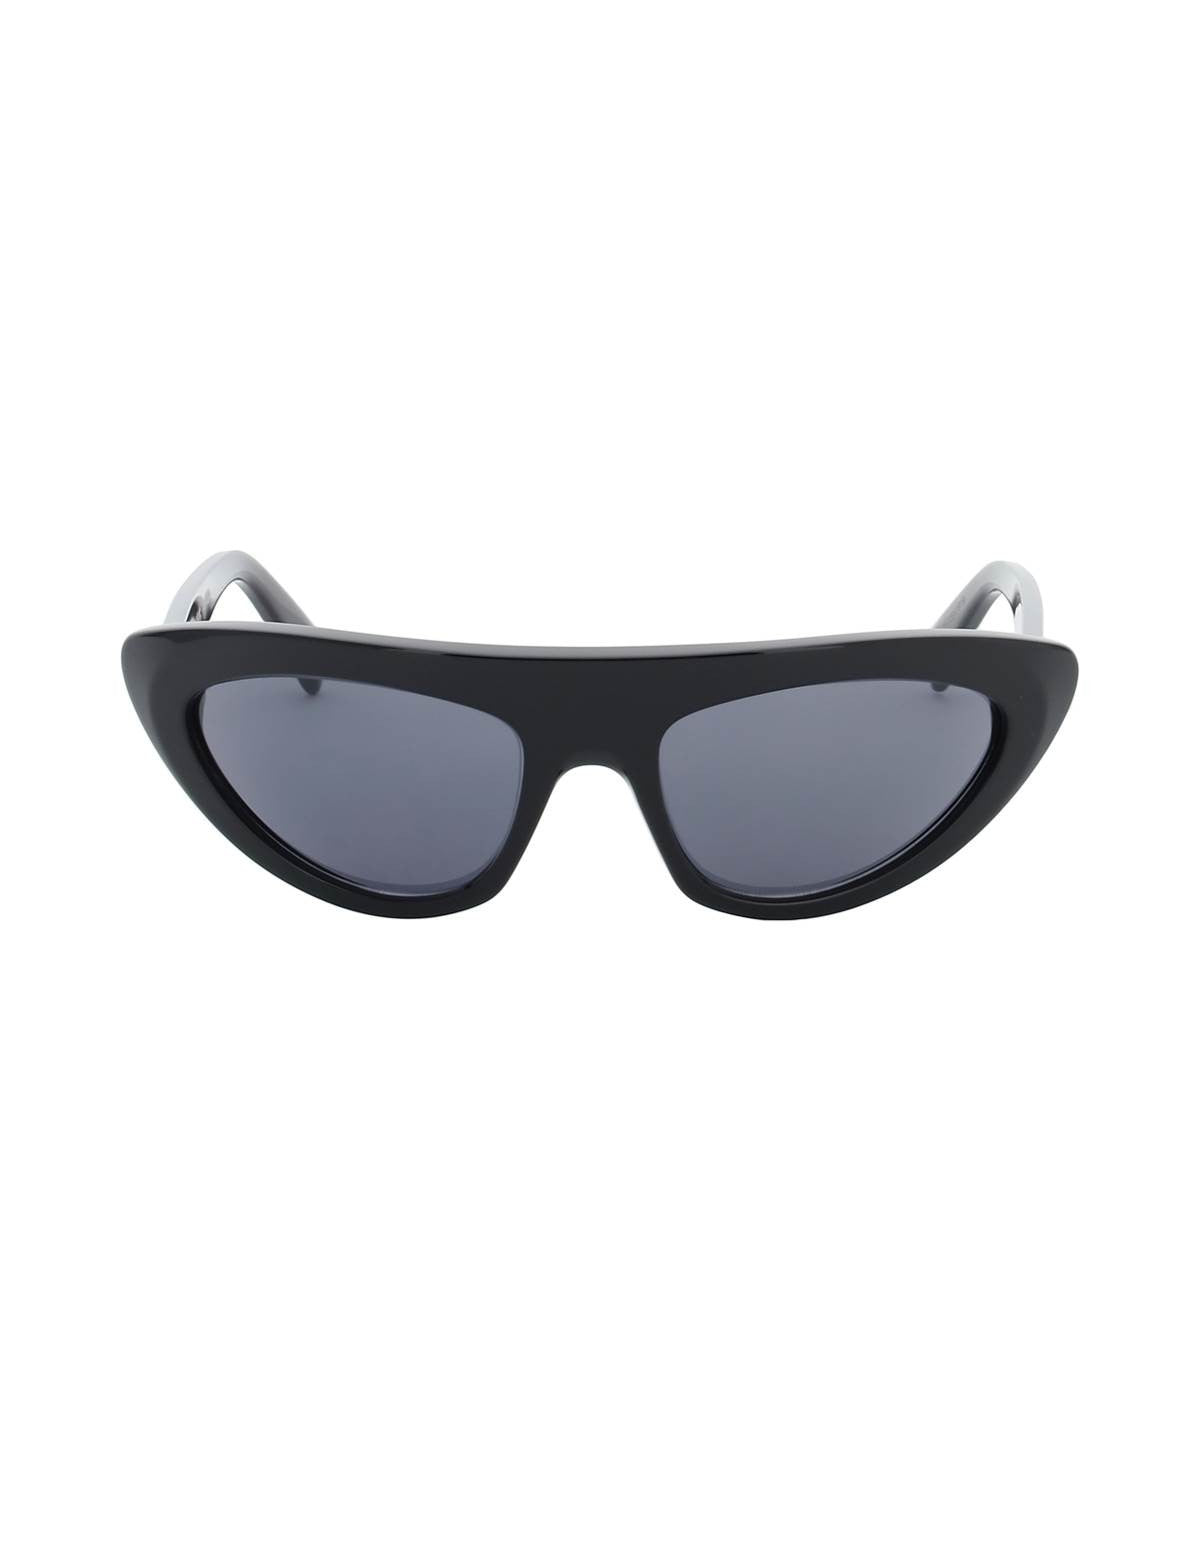 celine-black-frame-48-sunglasses.jpg